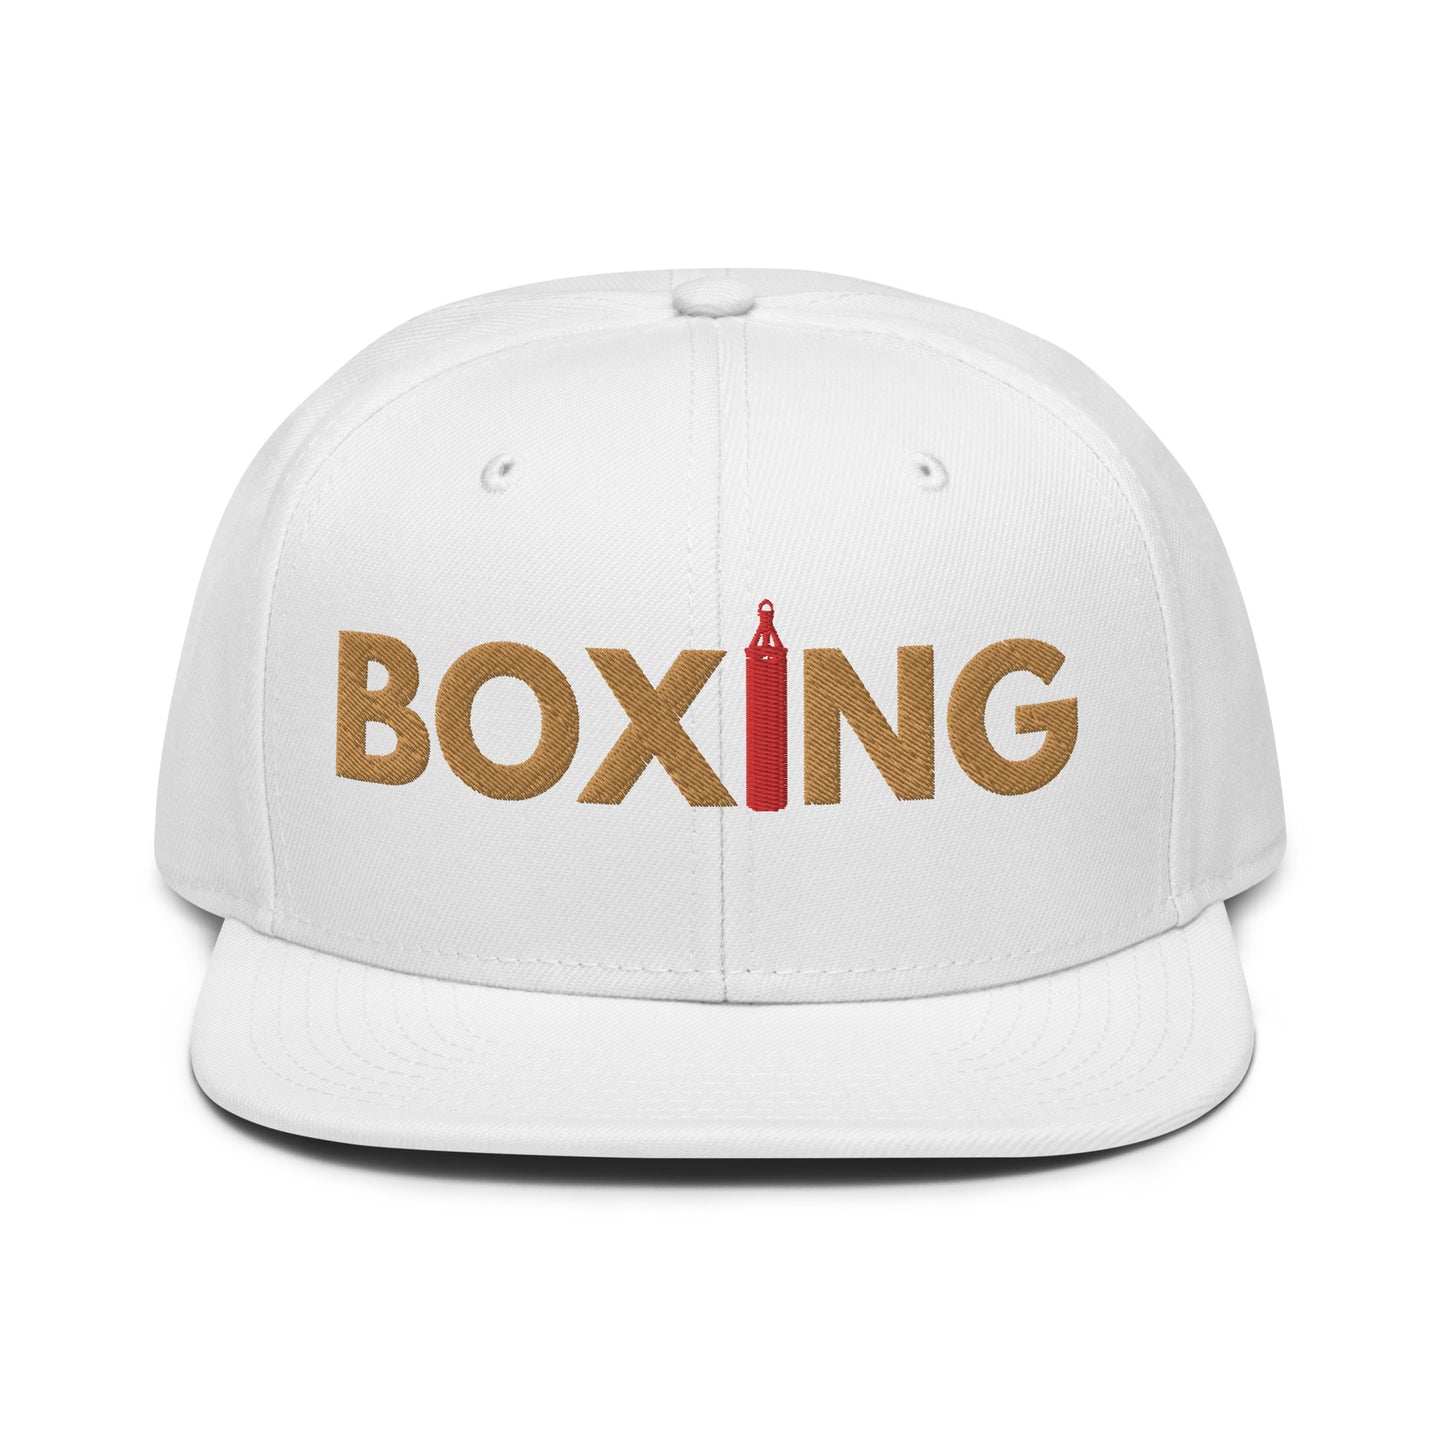 Boxing "OG" Snapback Hat